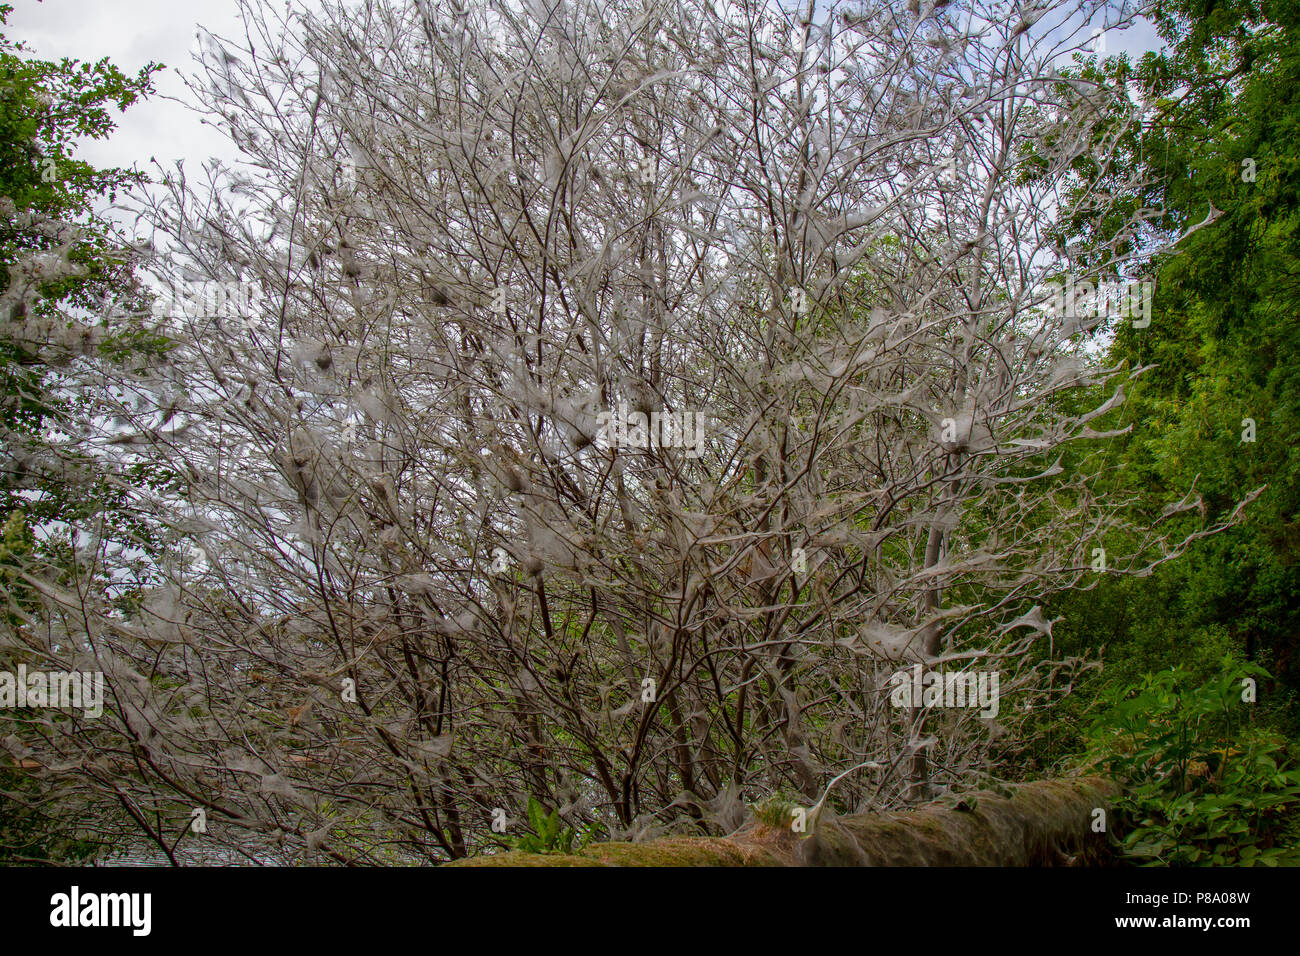 Bird-cherry Ermellino Moth i bruchi in web su albero Foto Stock